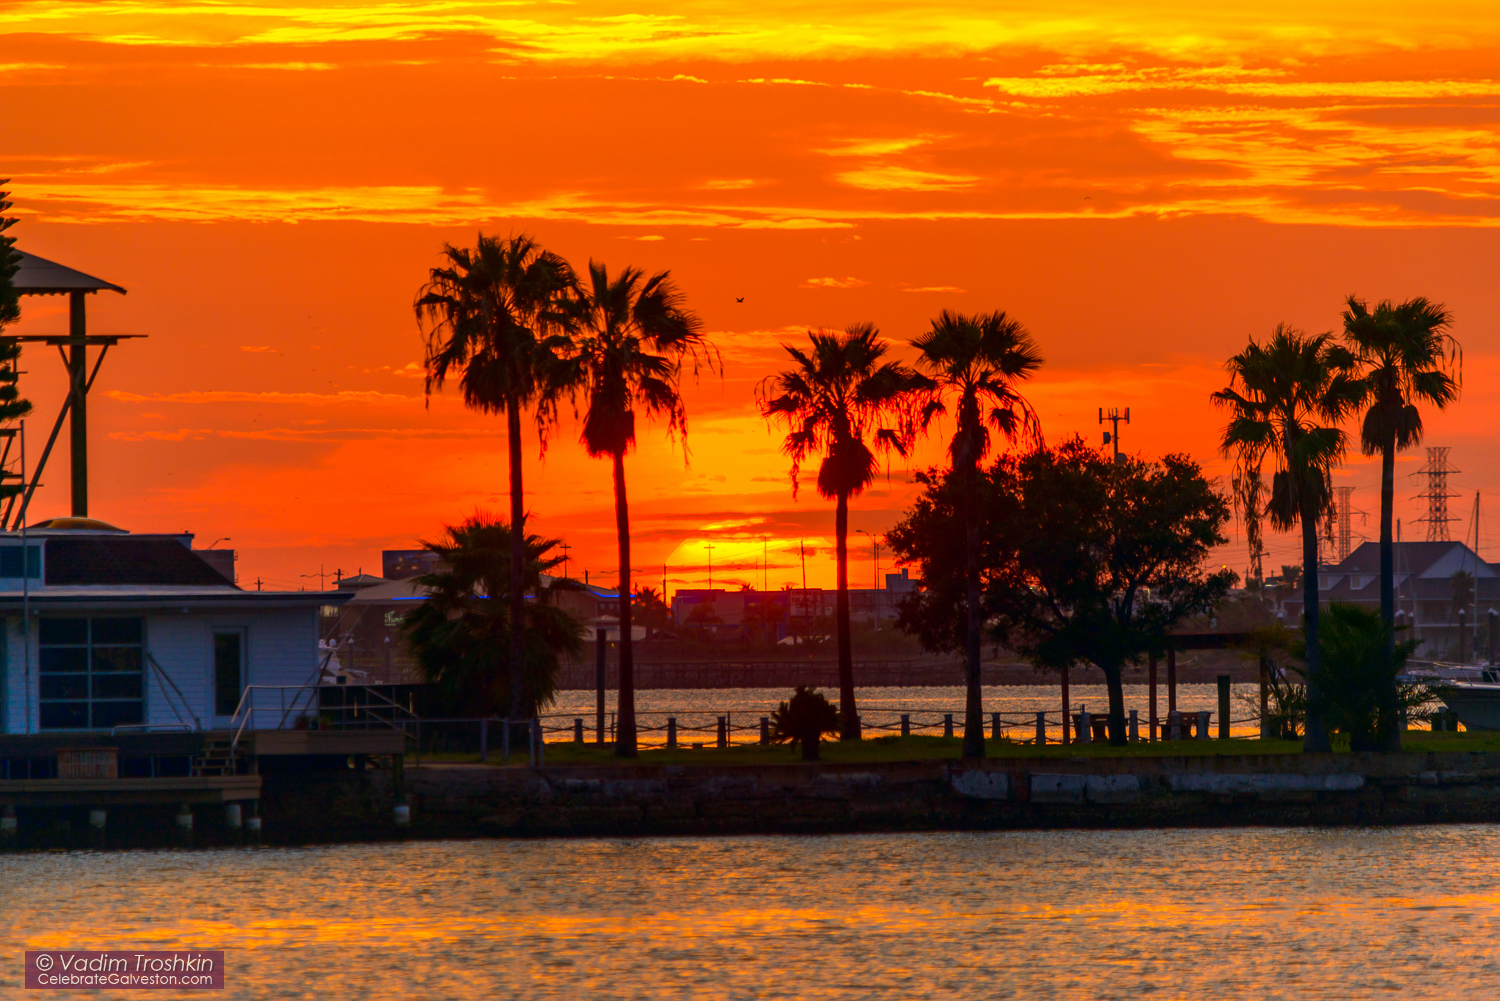 August 25, 2015 #Galveston #Sunset 